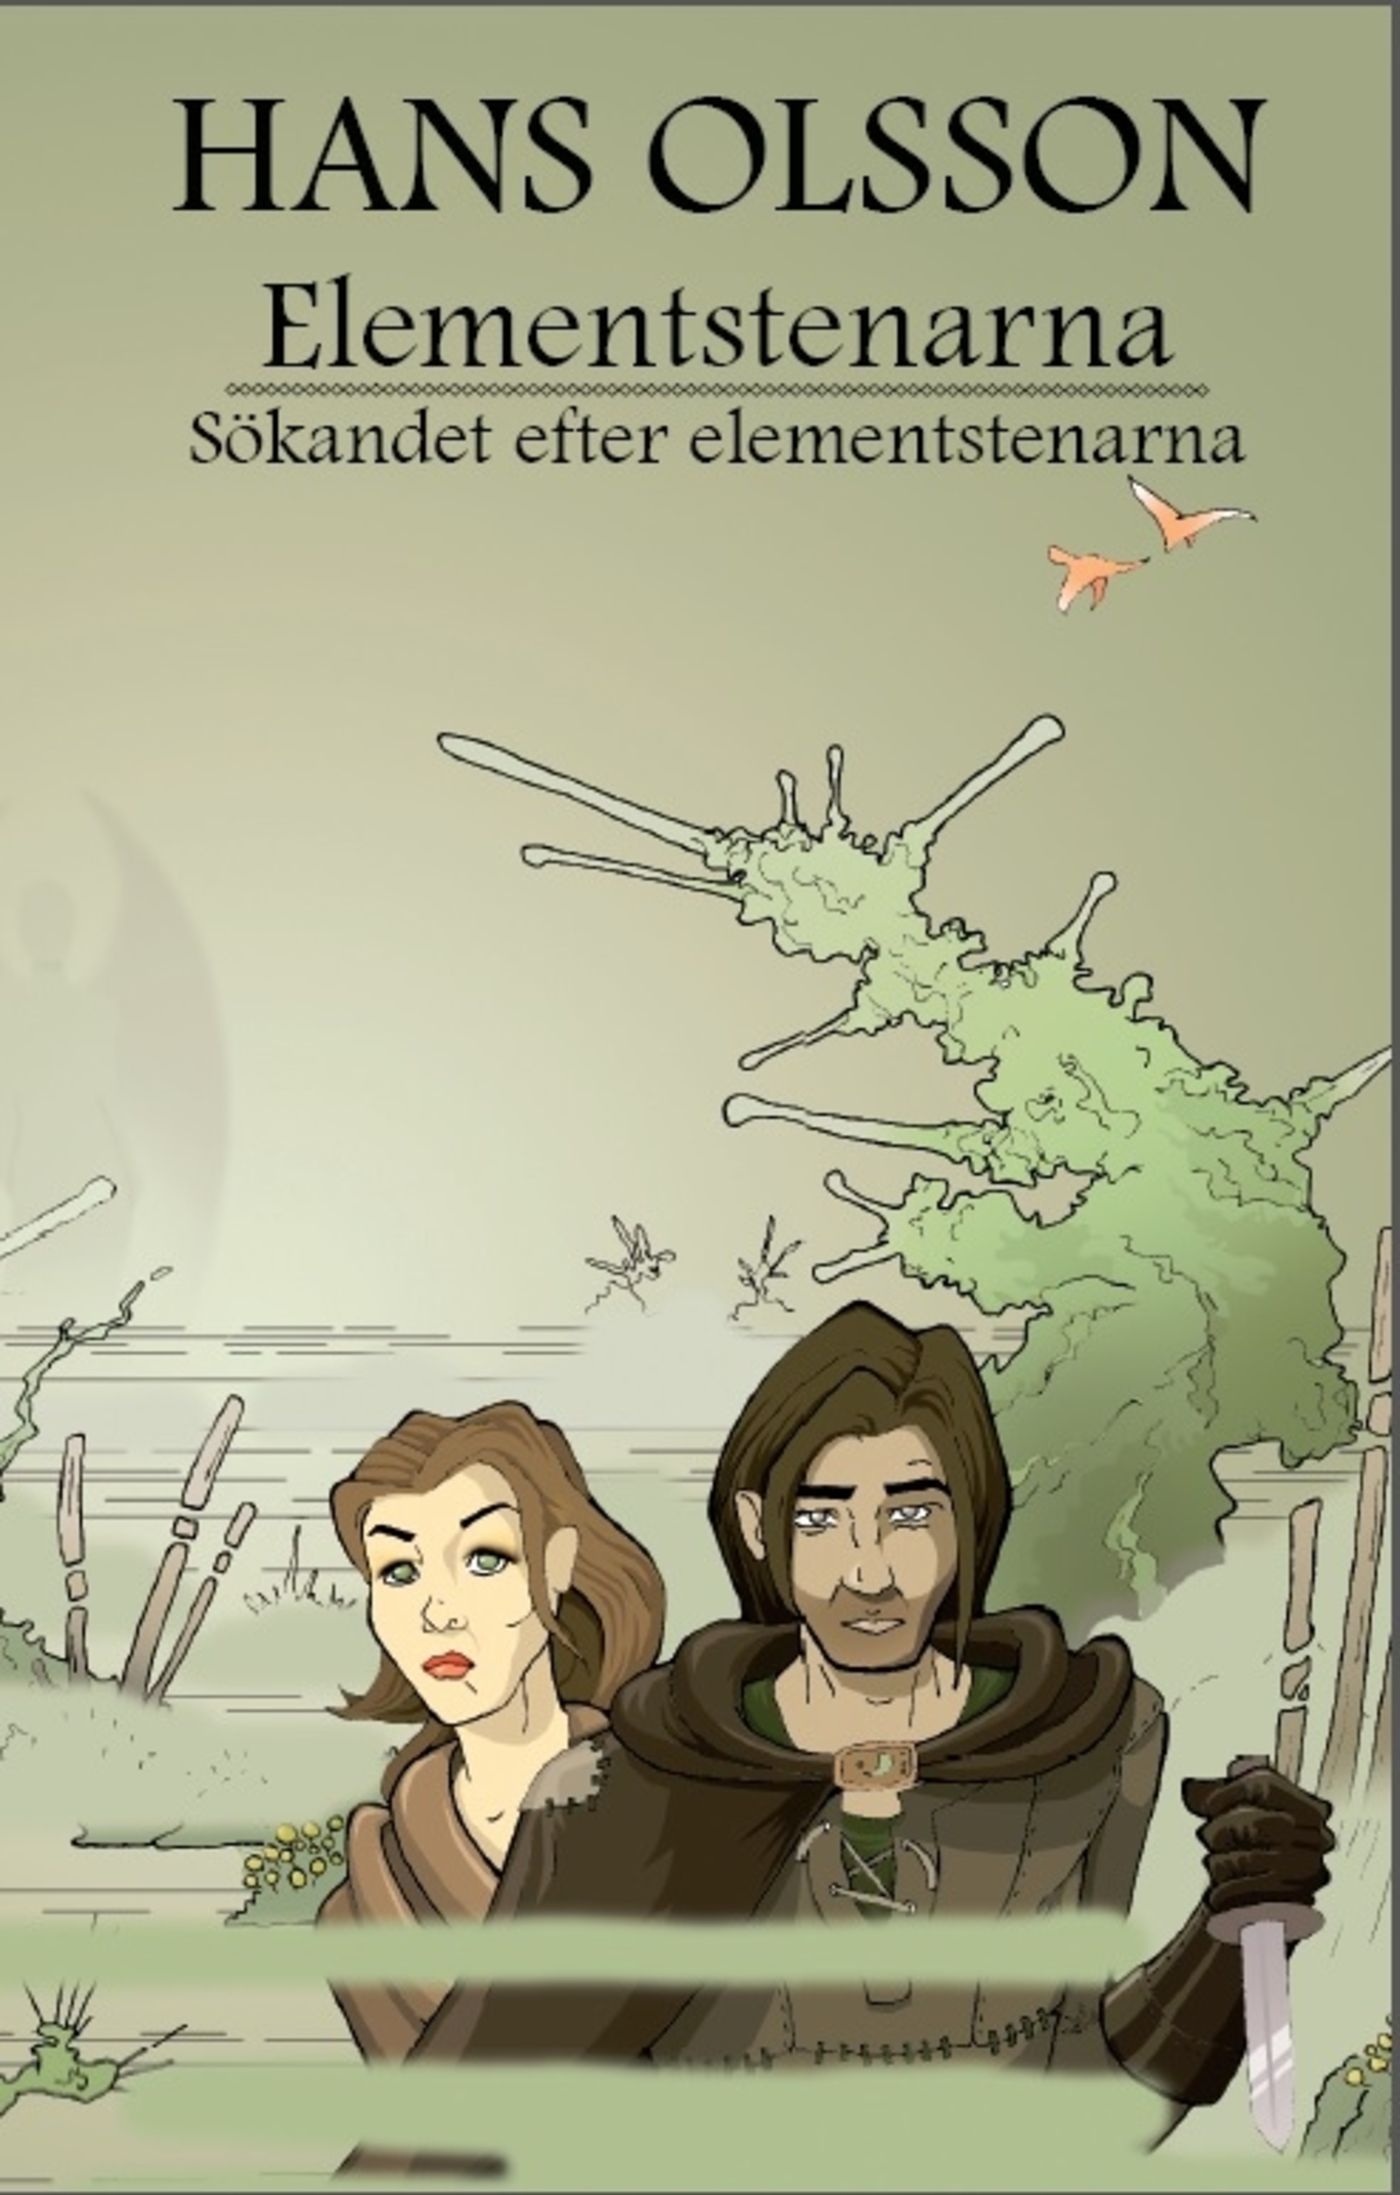 Sökandet efter elementstenarna, e-bog af Hans Olsson